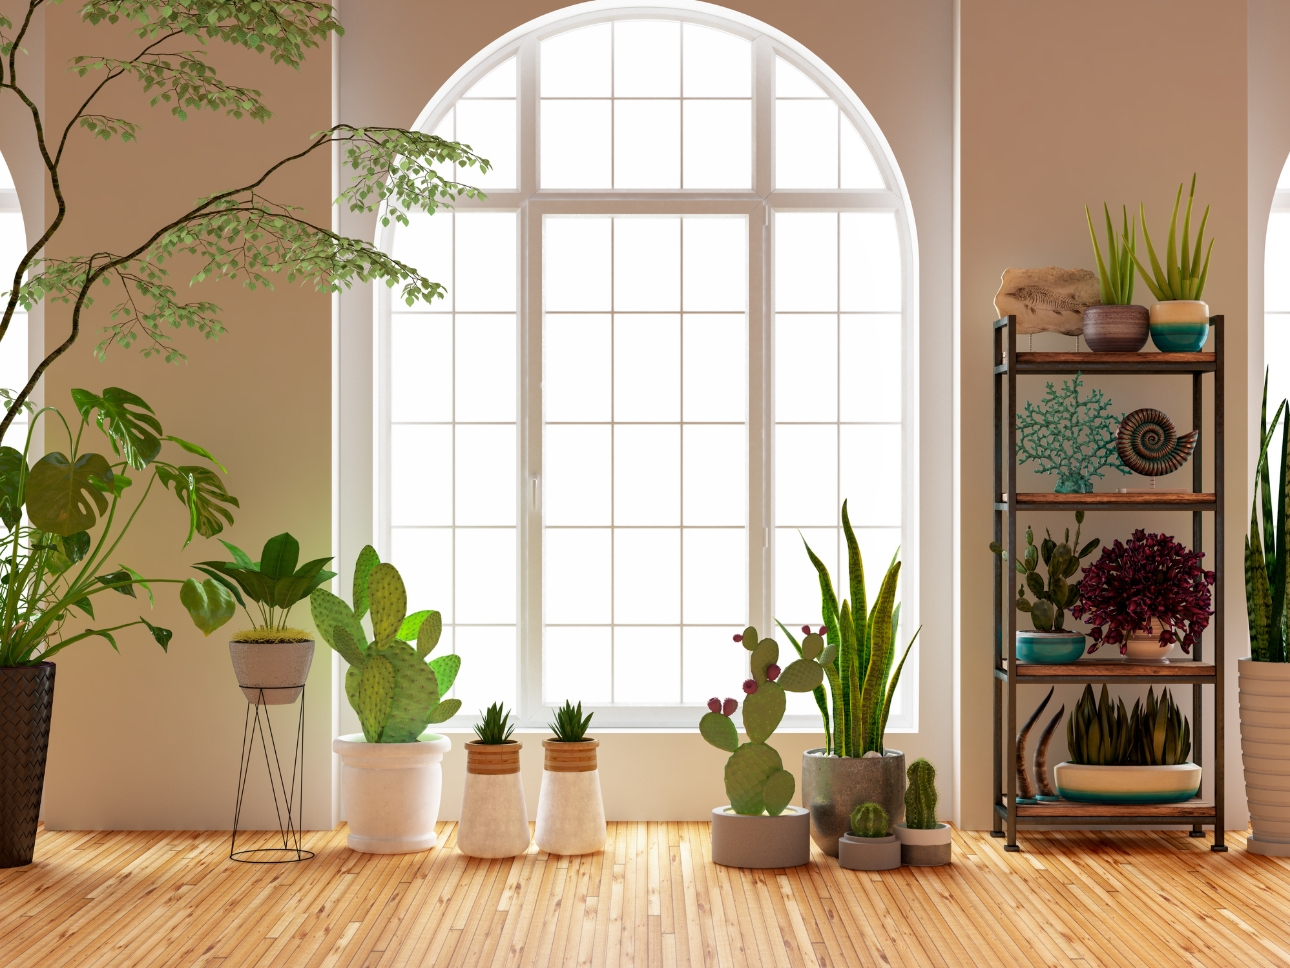 plants in pots in window set up